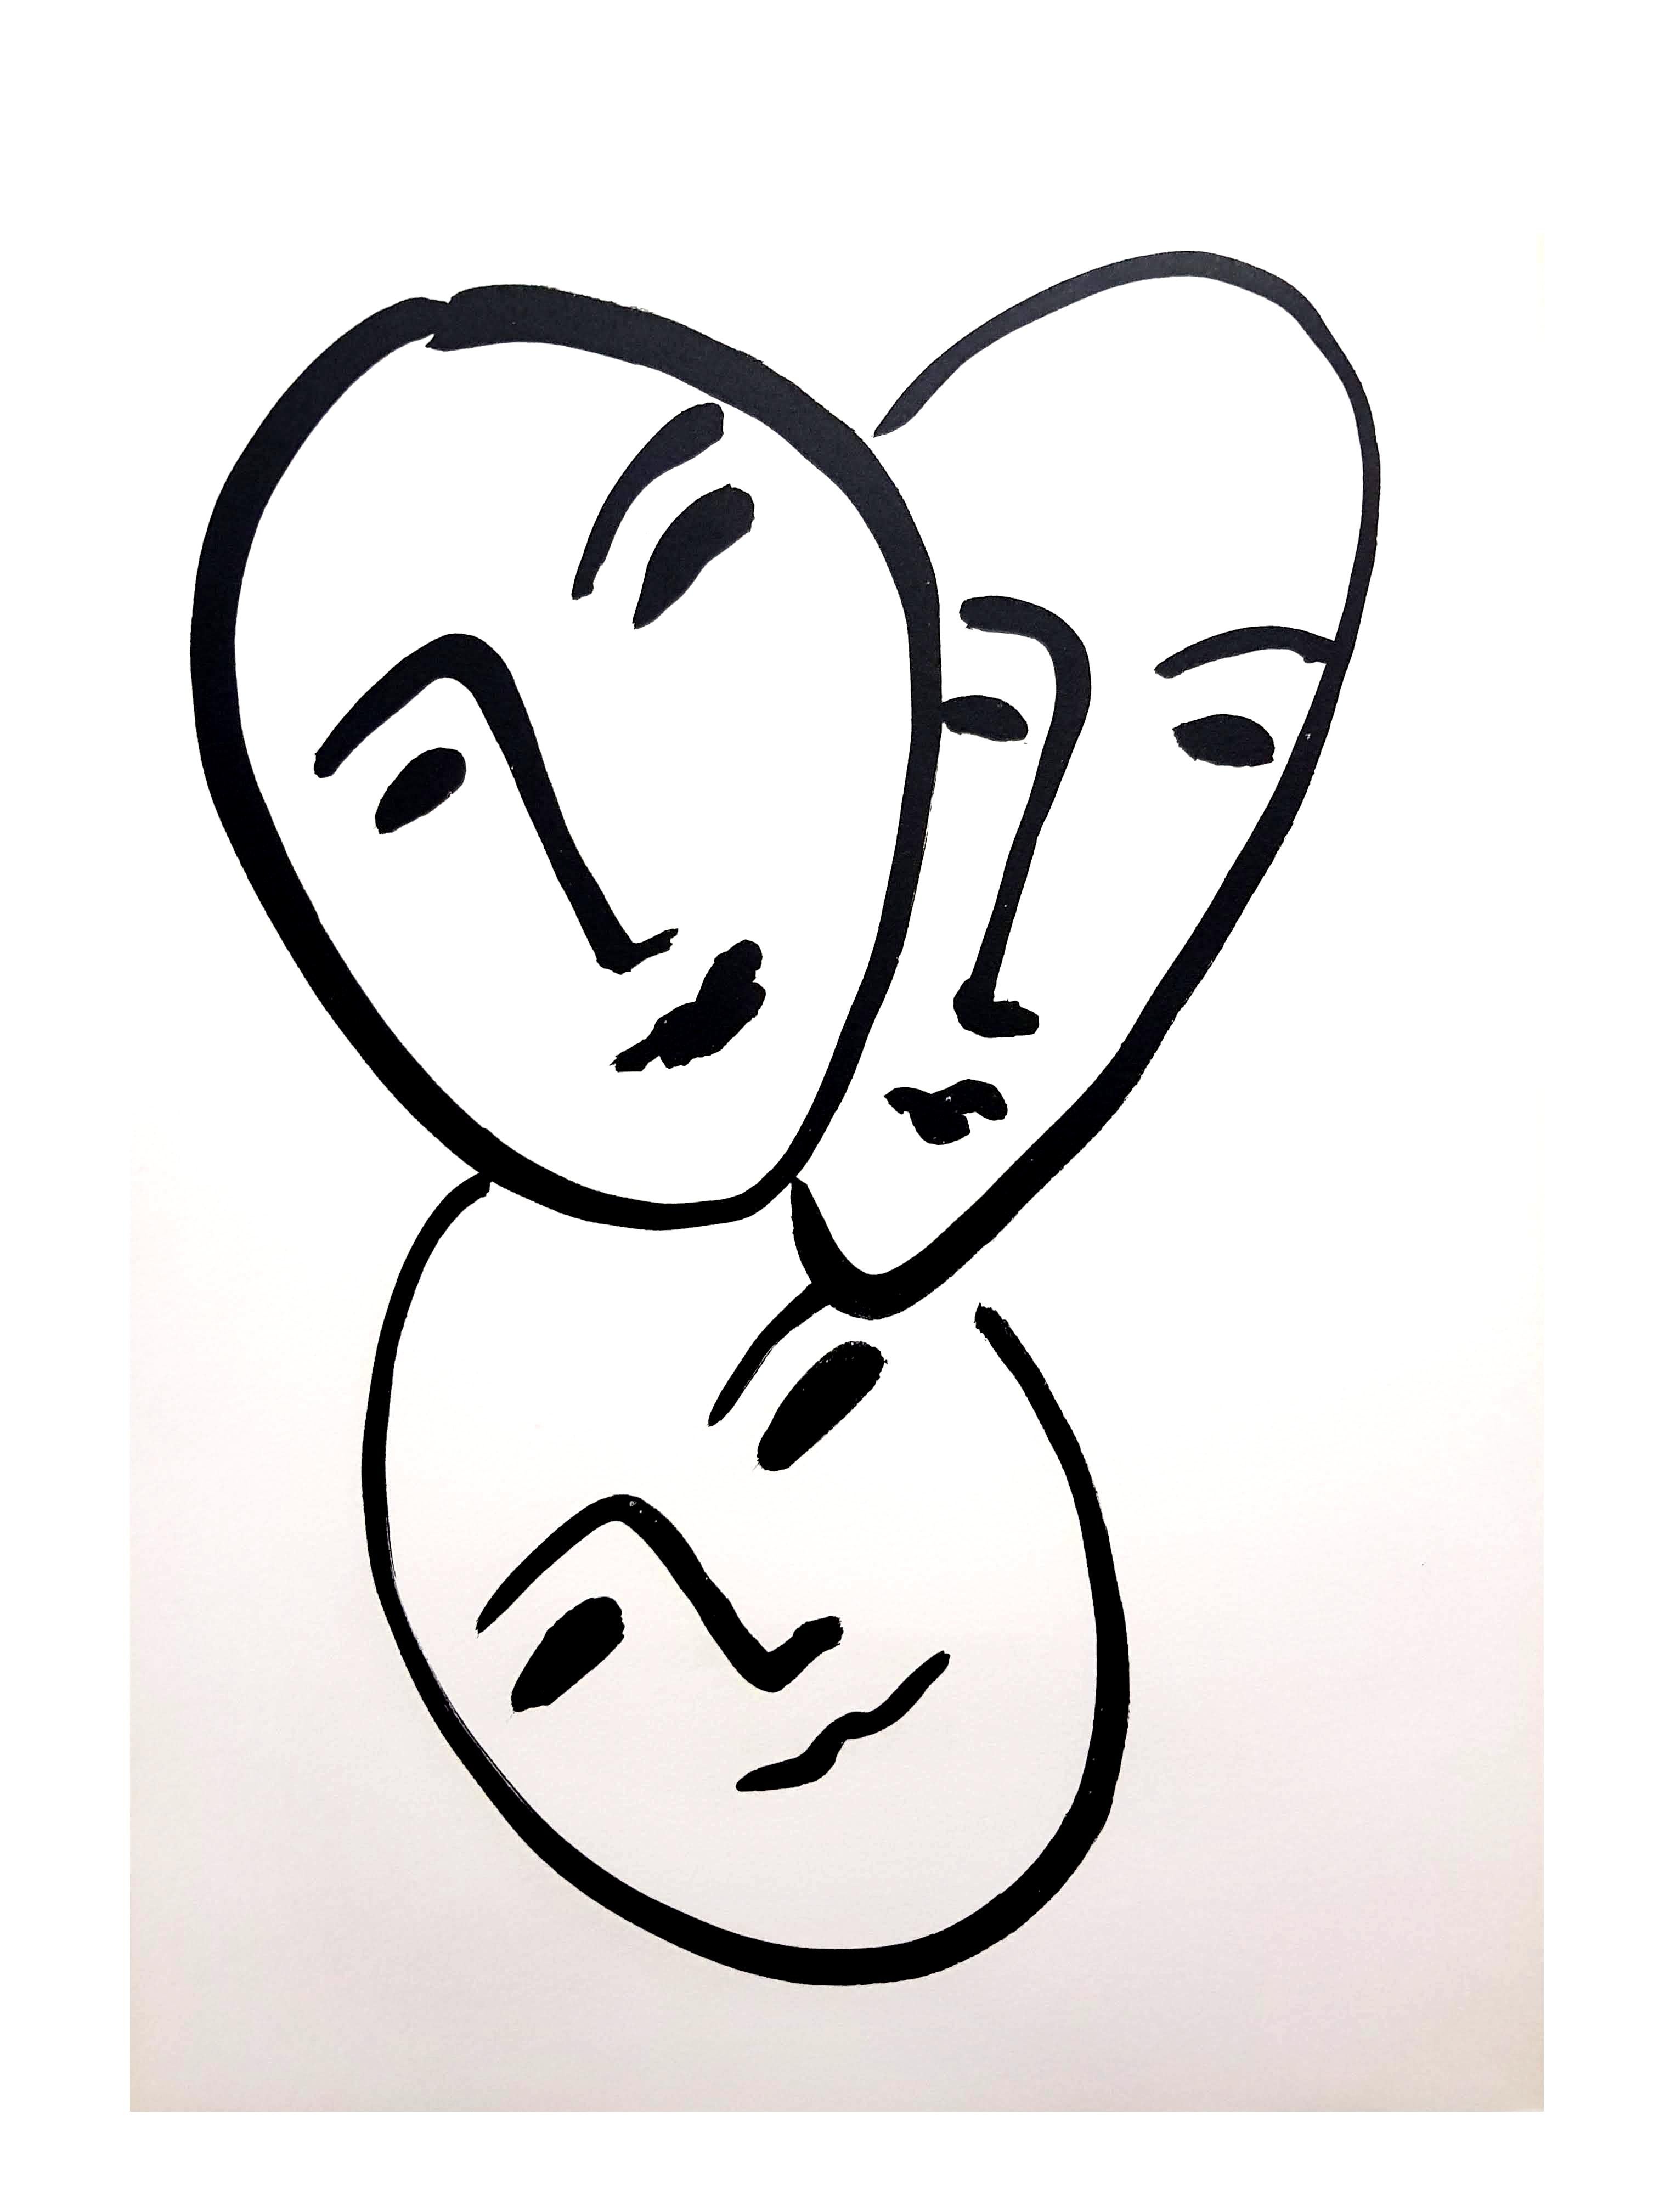 Original Originallithographie - Henri Matisse - Drei Gesichter 
Aus dem Buch Apollinaire (Paris: Raisons d'Etre:: 1952) mit Text von Andr Rouveyre 
Künstler: Henri MATISSE 
13 x 10 Zoll 
Auflage: 151/300 
Die Teller waren nicht signiert.